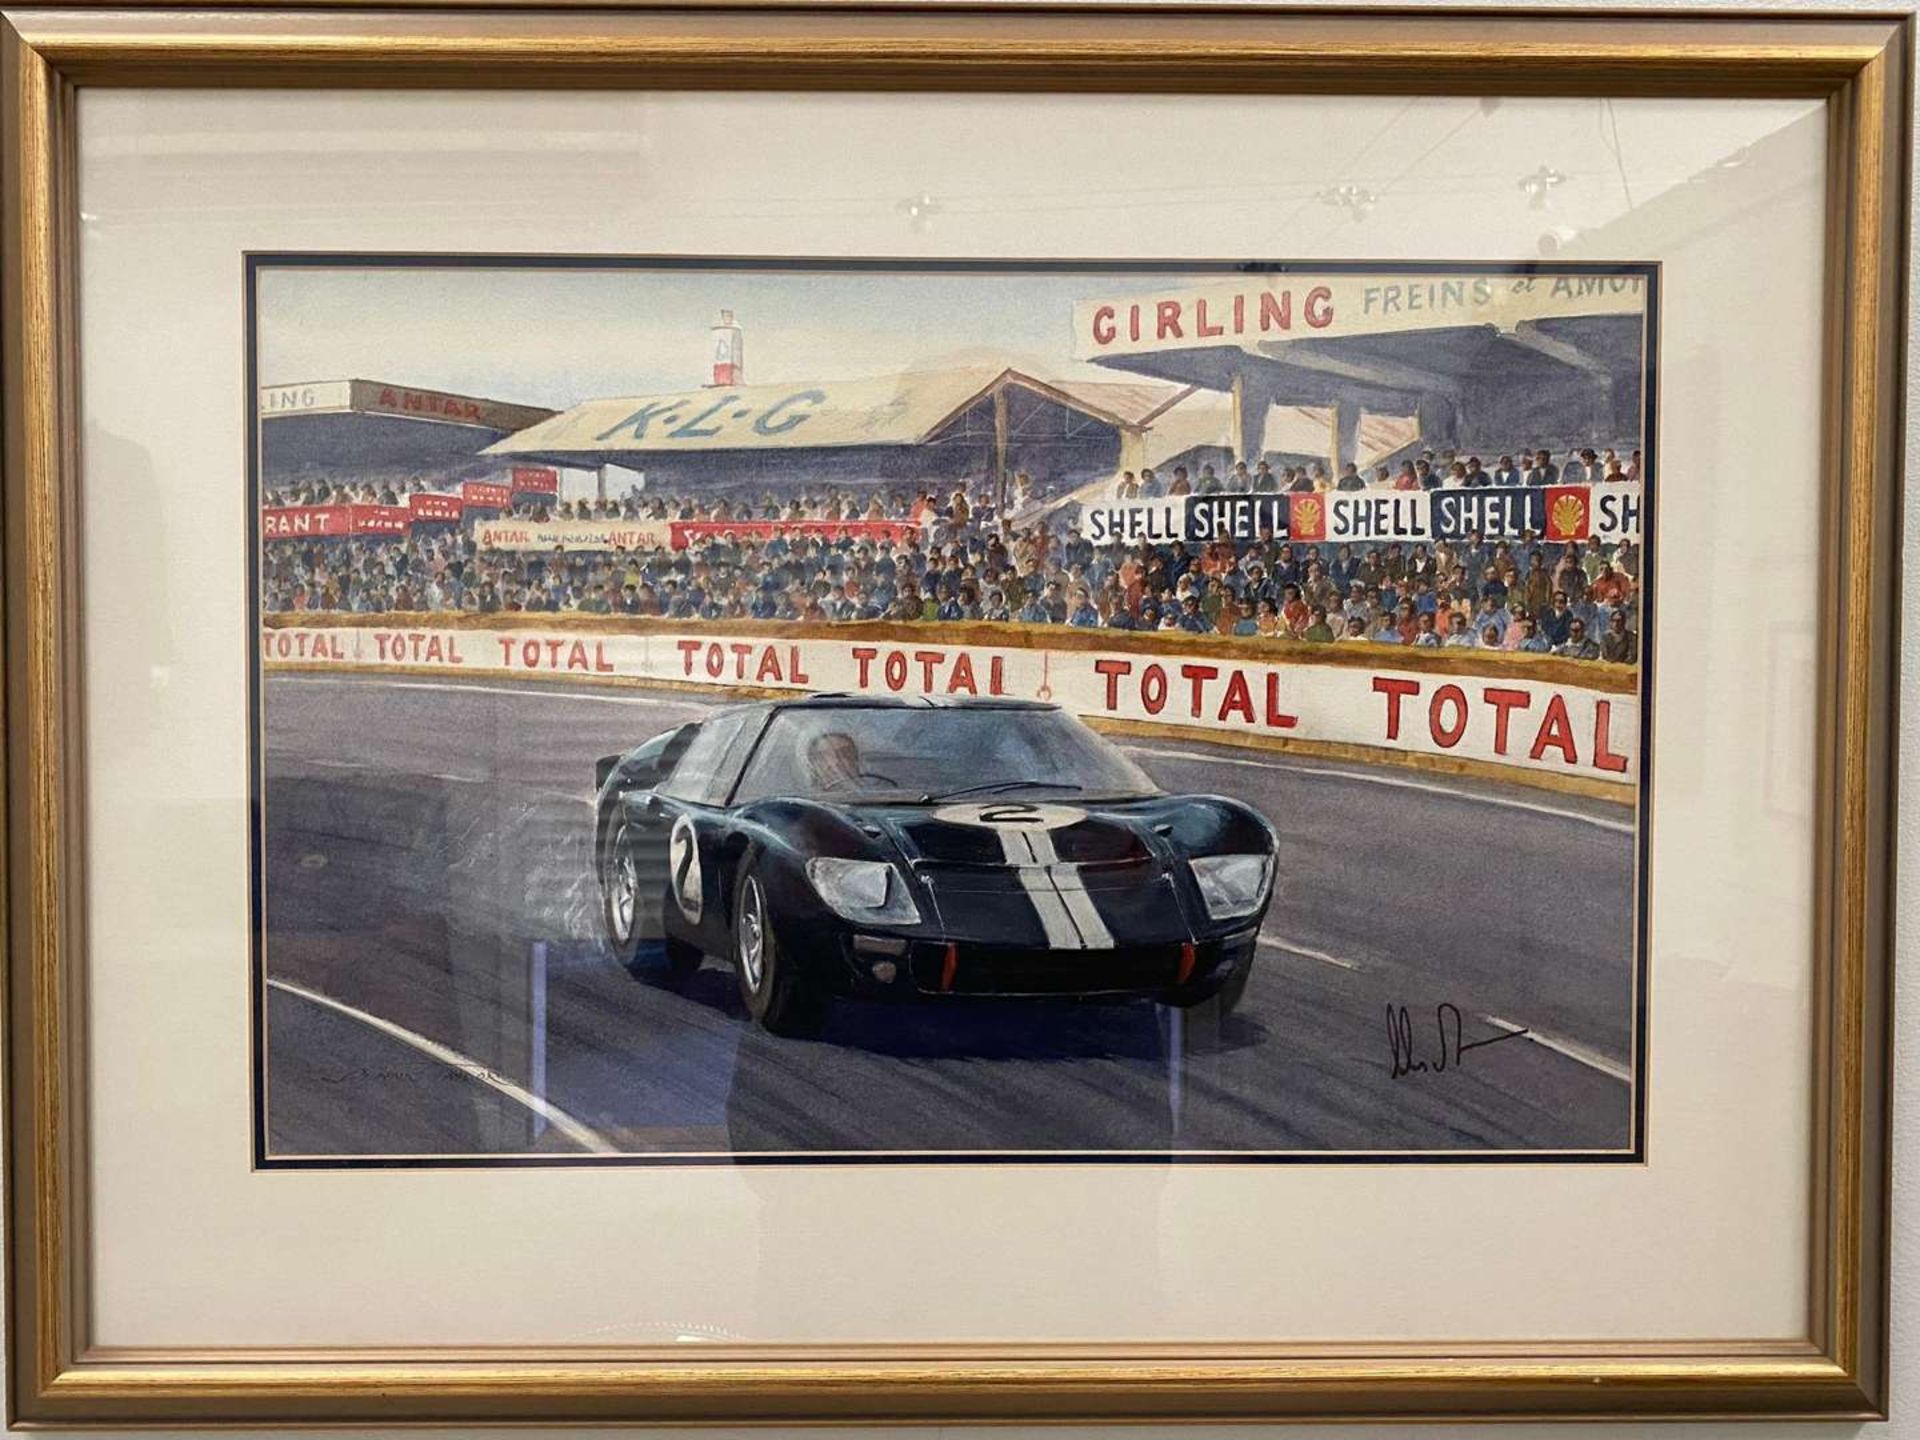 DENNIS TAYLOR (NZ), “Chris Amon, Ford GT40, 1966 Le Mans 24hr”, watercolour